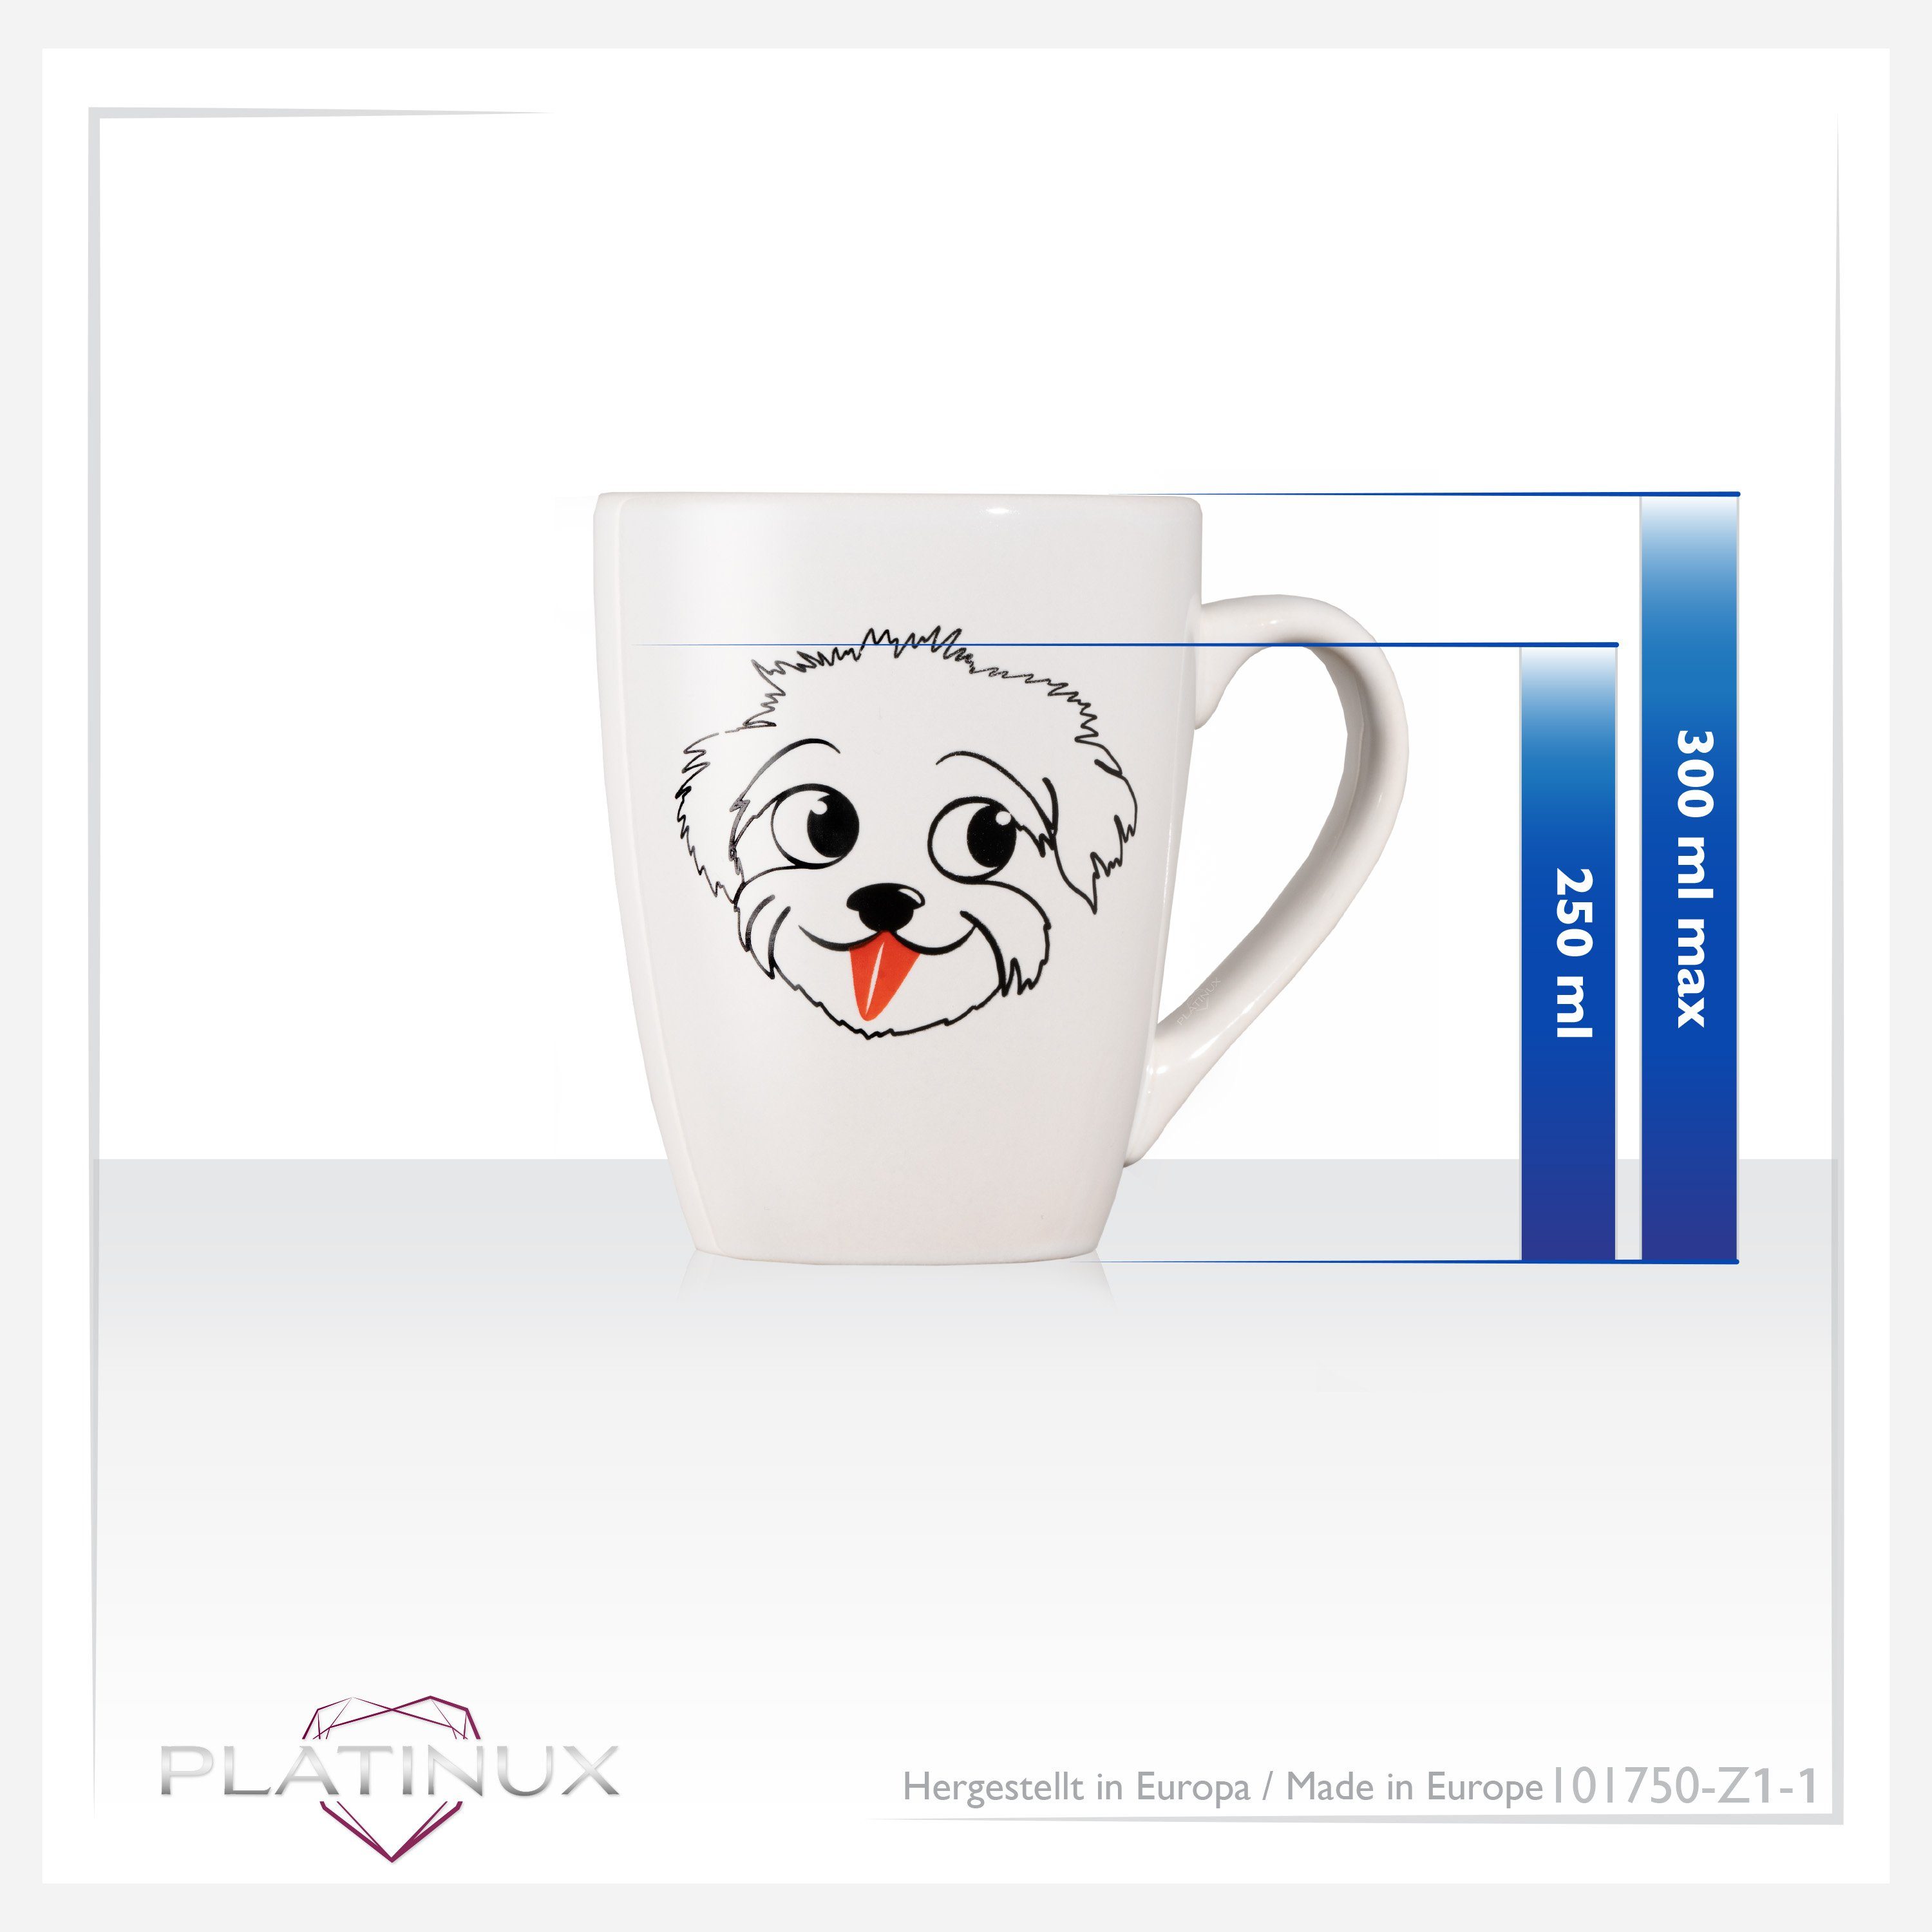 Keramik, 250ml Keramik PLATINUX "Einstein", Tasse Tasse mit Kaffeebecher Teetasse Teebecher Griff aus Hunde Motiv mit Kaffeetasse